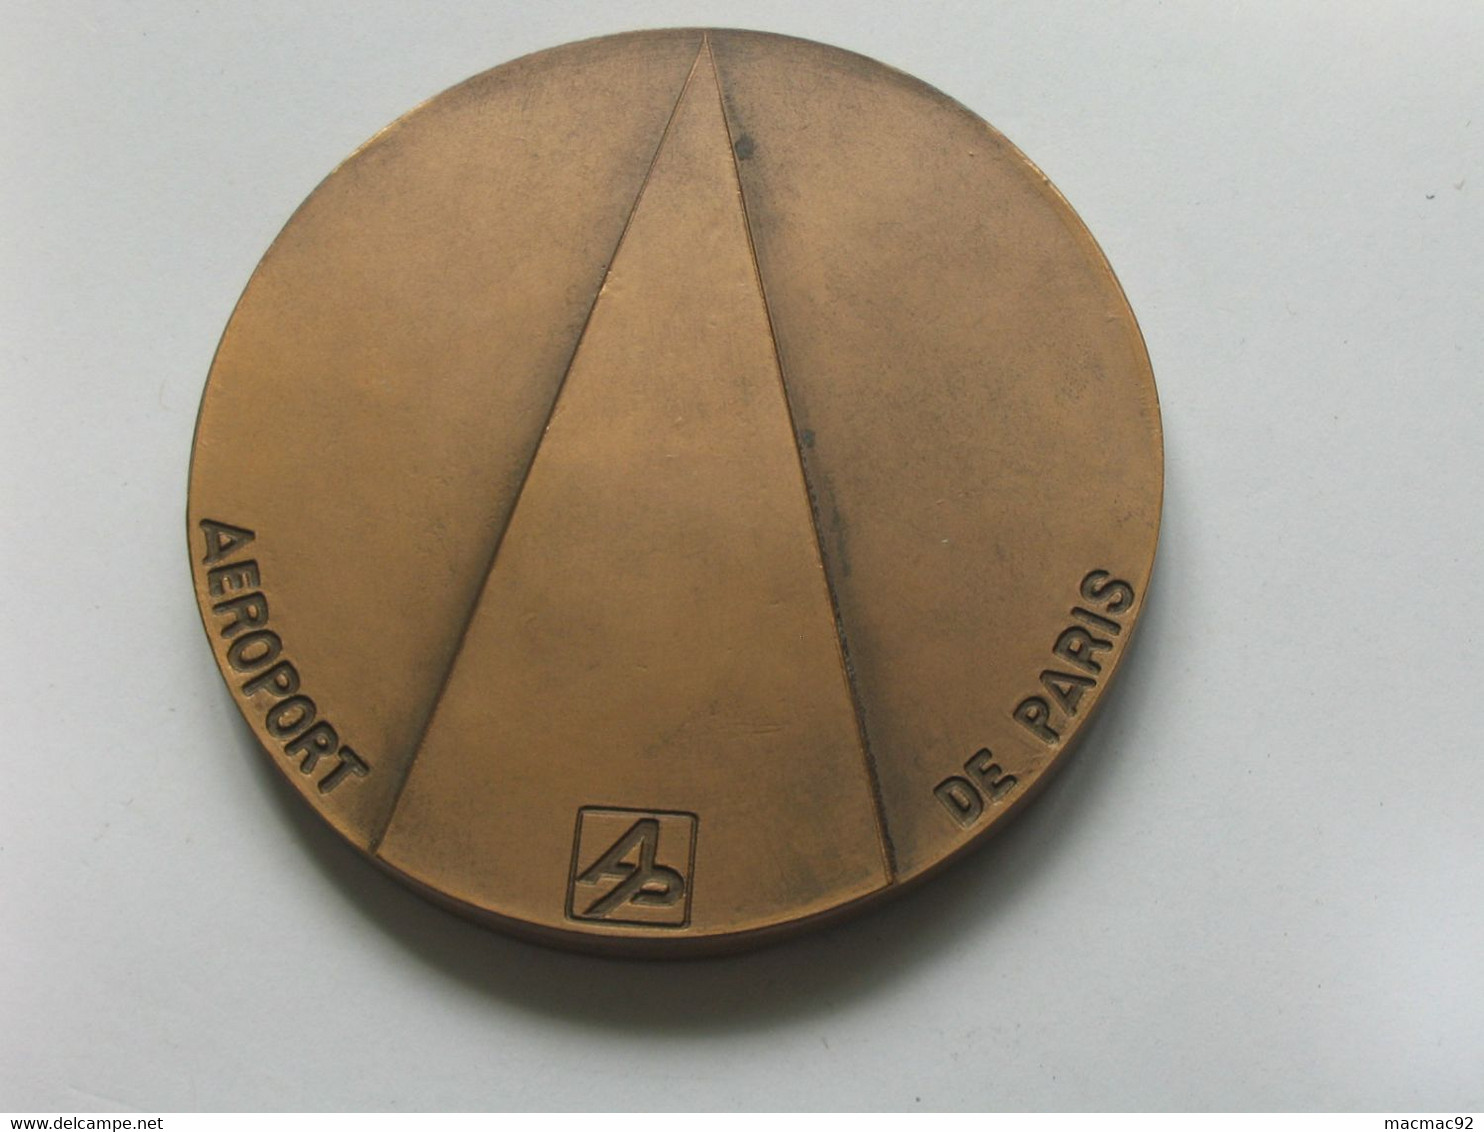 Médaille AEROPORT DE PARIS - AERPORT CHARLES DE GAULLE 1974  **** EN ACHAT IMMEDIAT **** - Professionnels / De Société